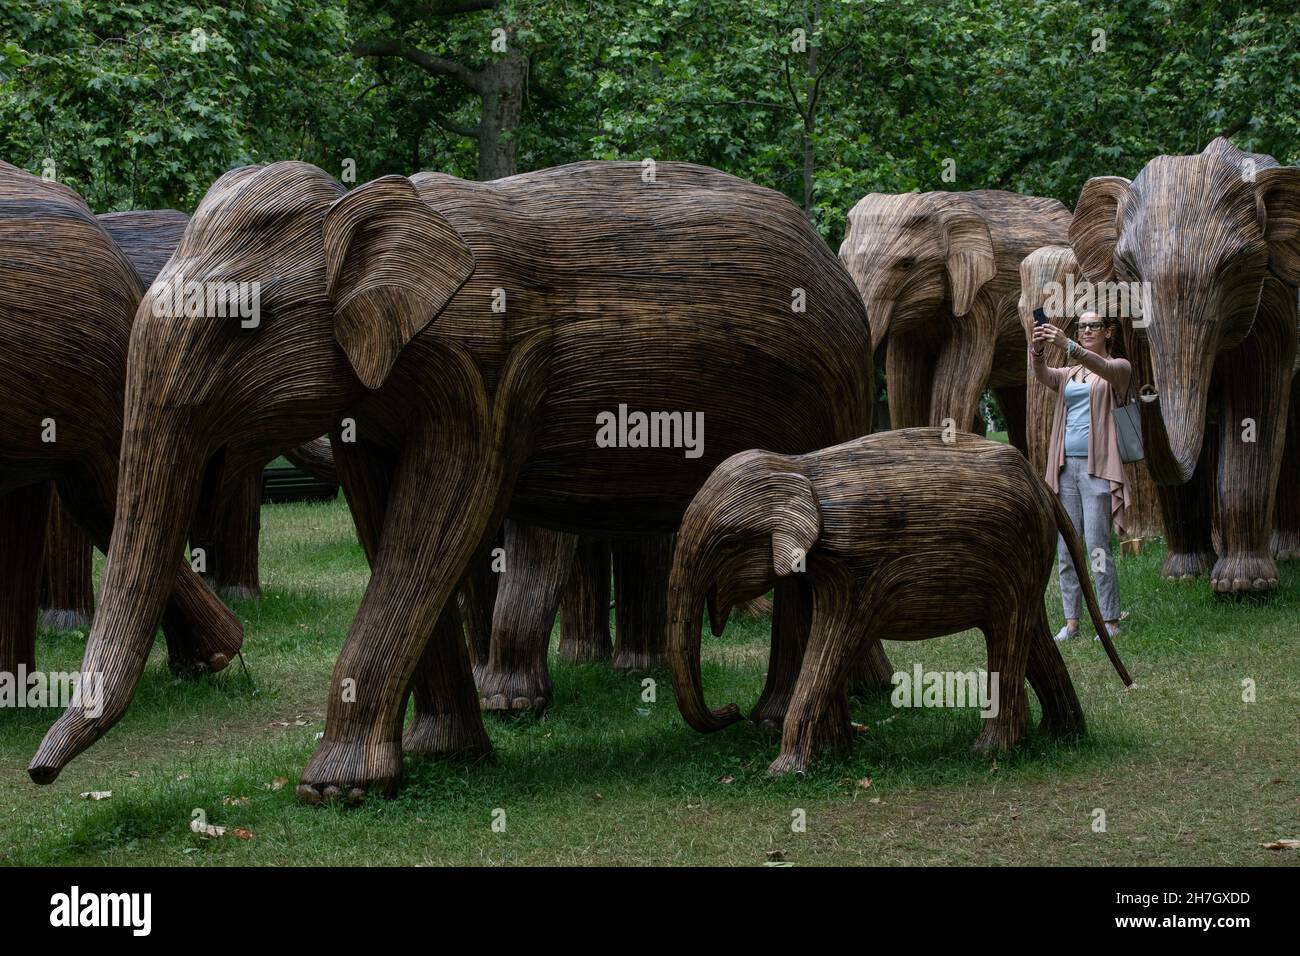 Exposition d'art environnemental de coexistence avec 100 éléphants de lantana grandeur nature à Green Park, amassé plus de 3 millions de livres pour des projets humains-animaux sauvages à Londres. Banque D'Images